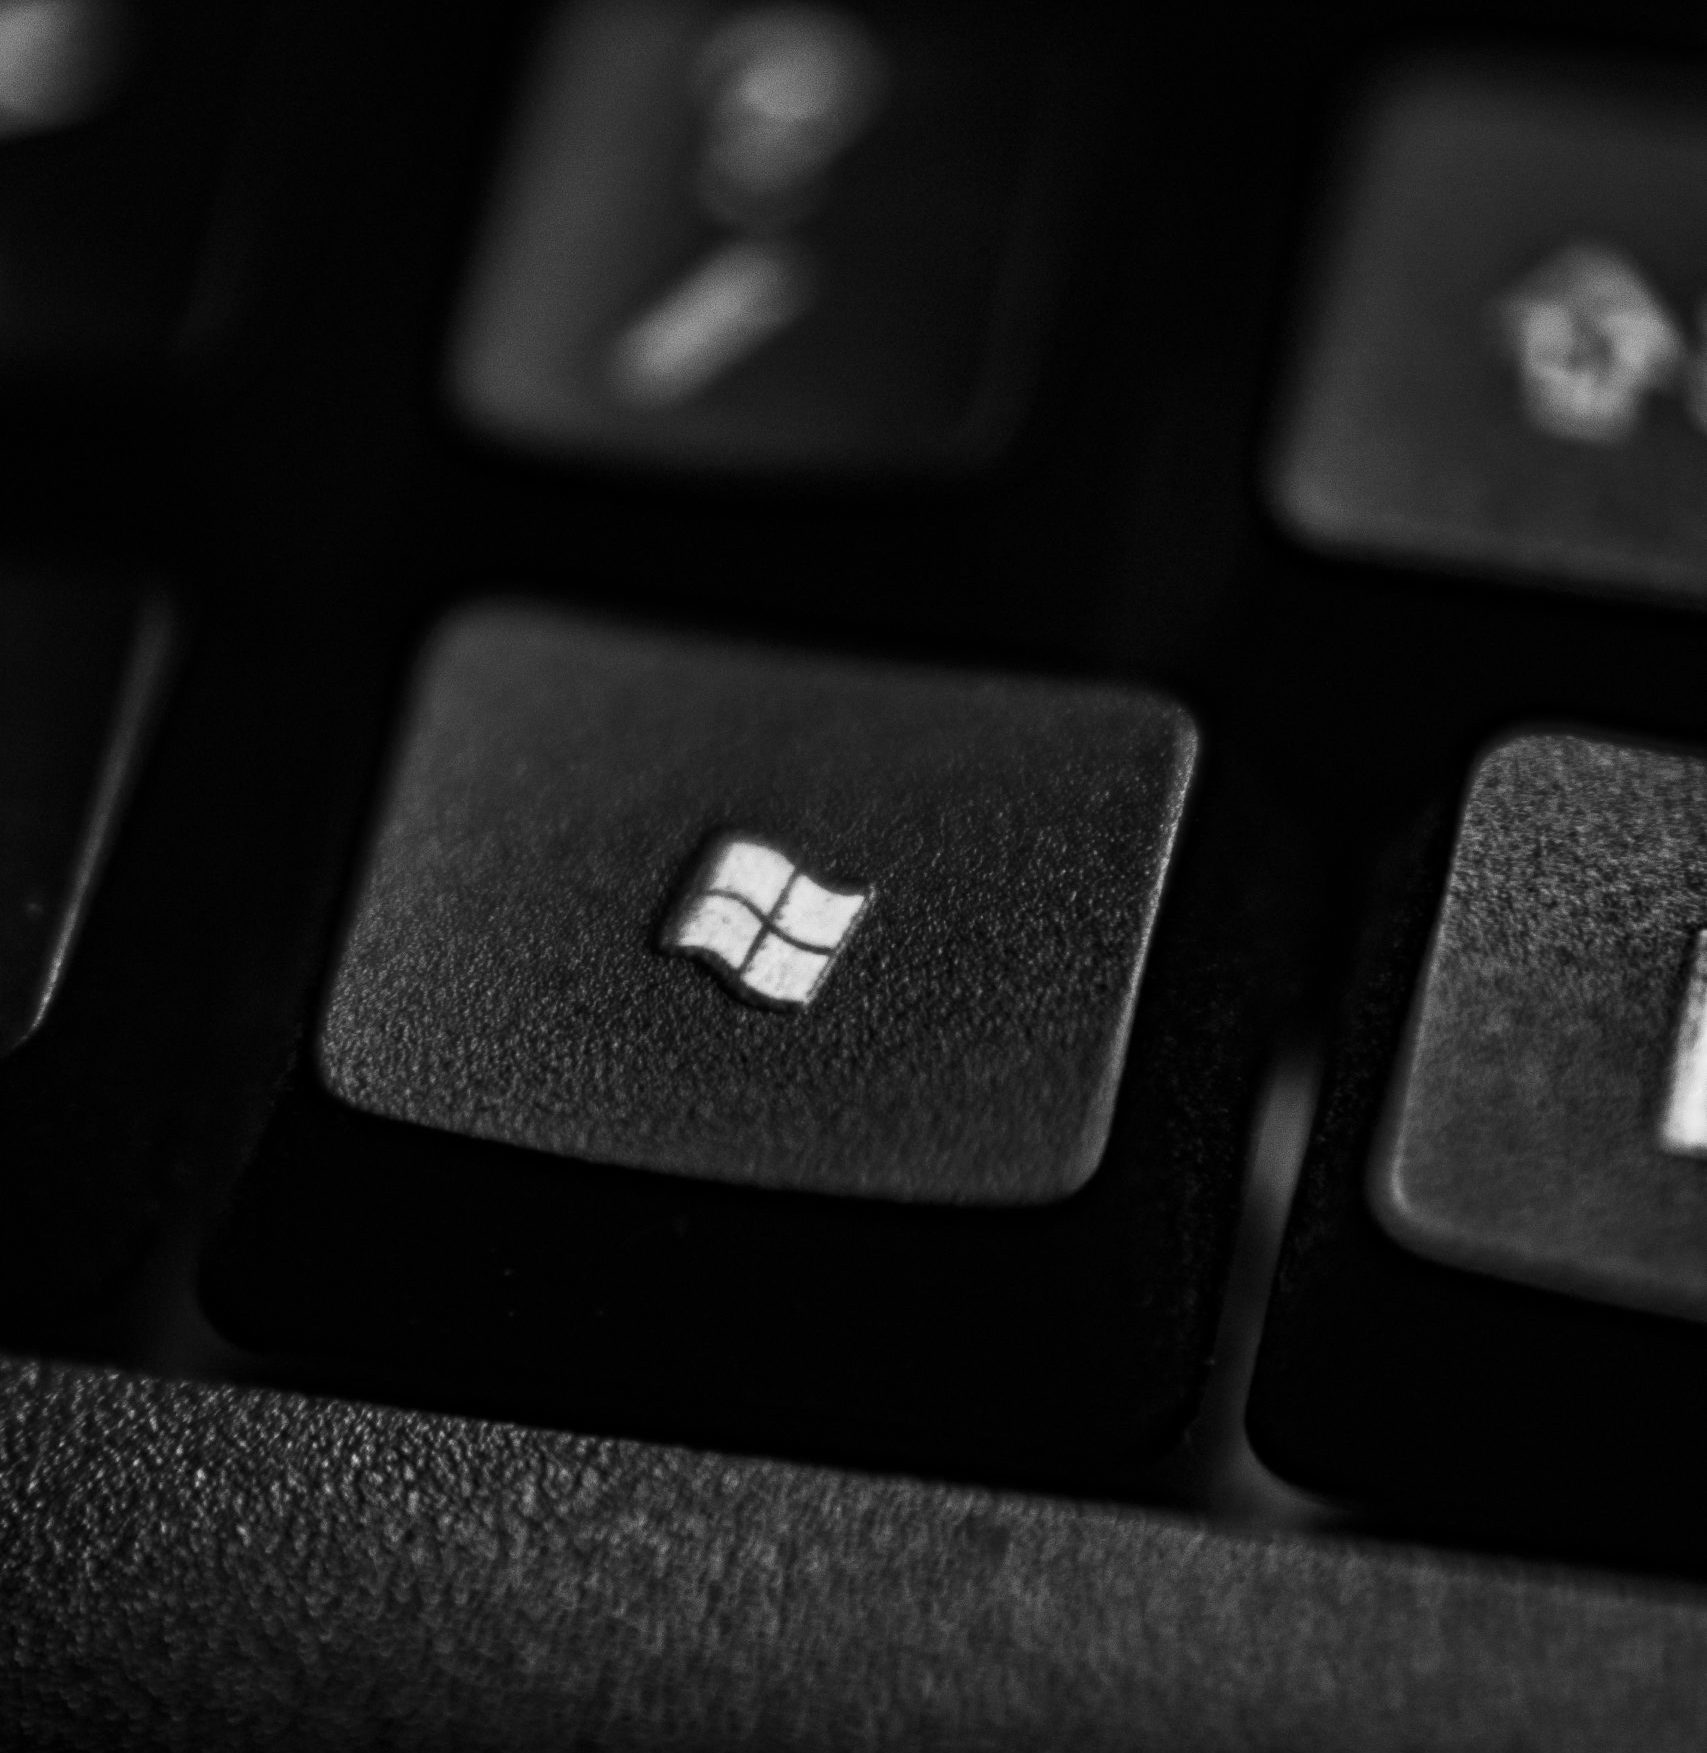 Ενημέρωση των Windows 11: Νέες δυνατότητες και αλλαγές